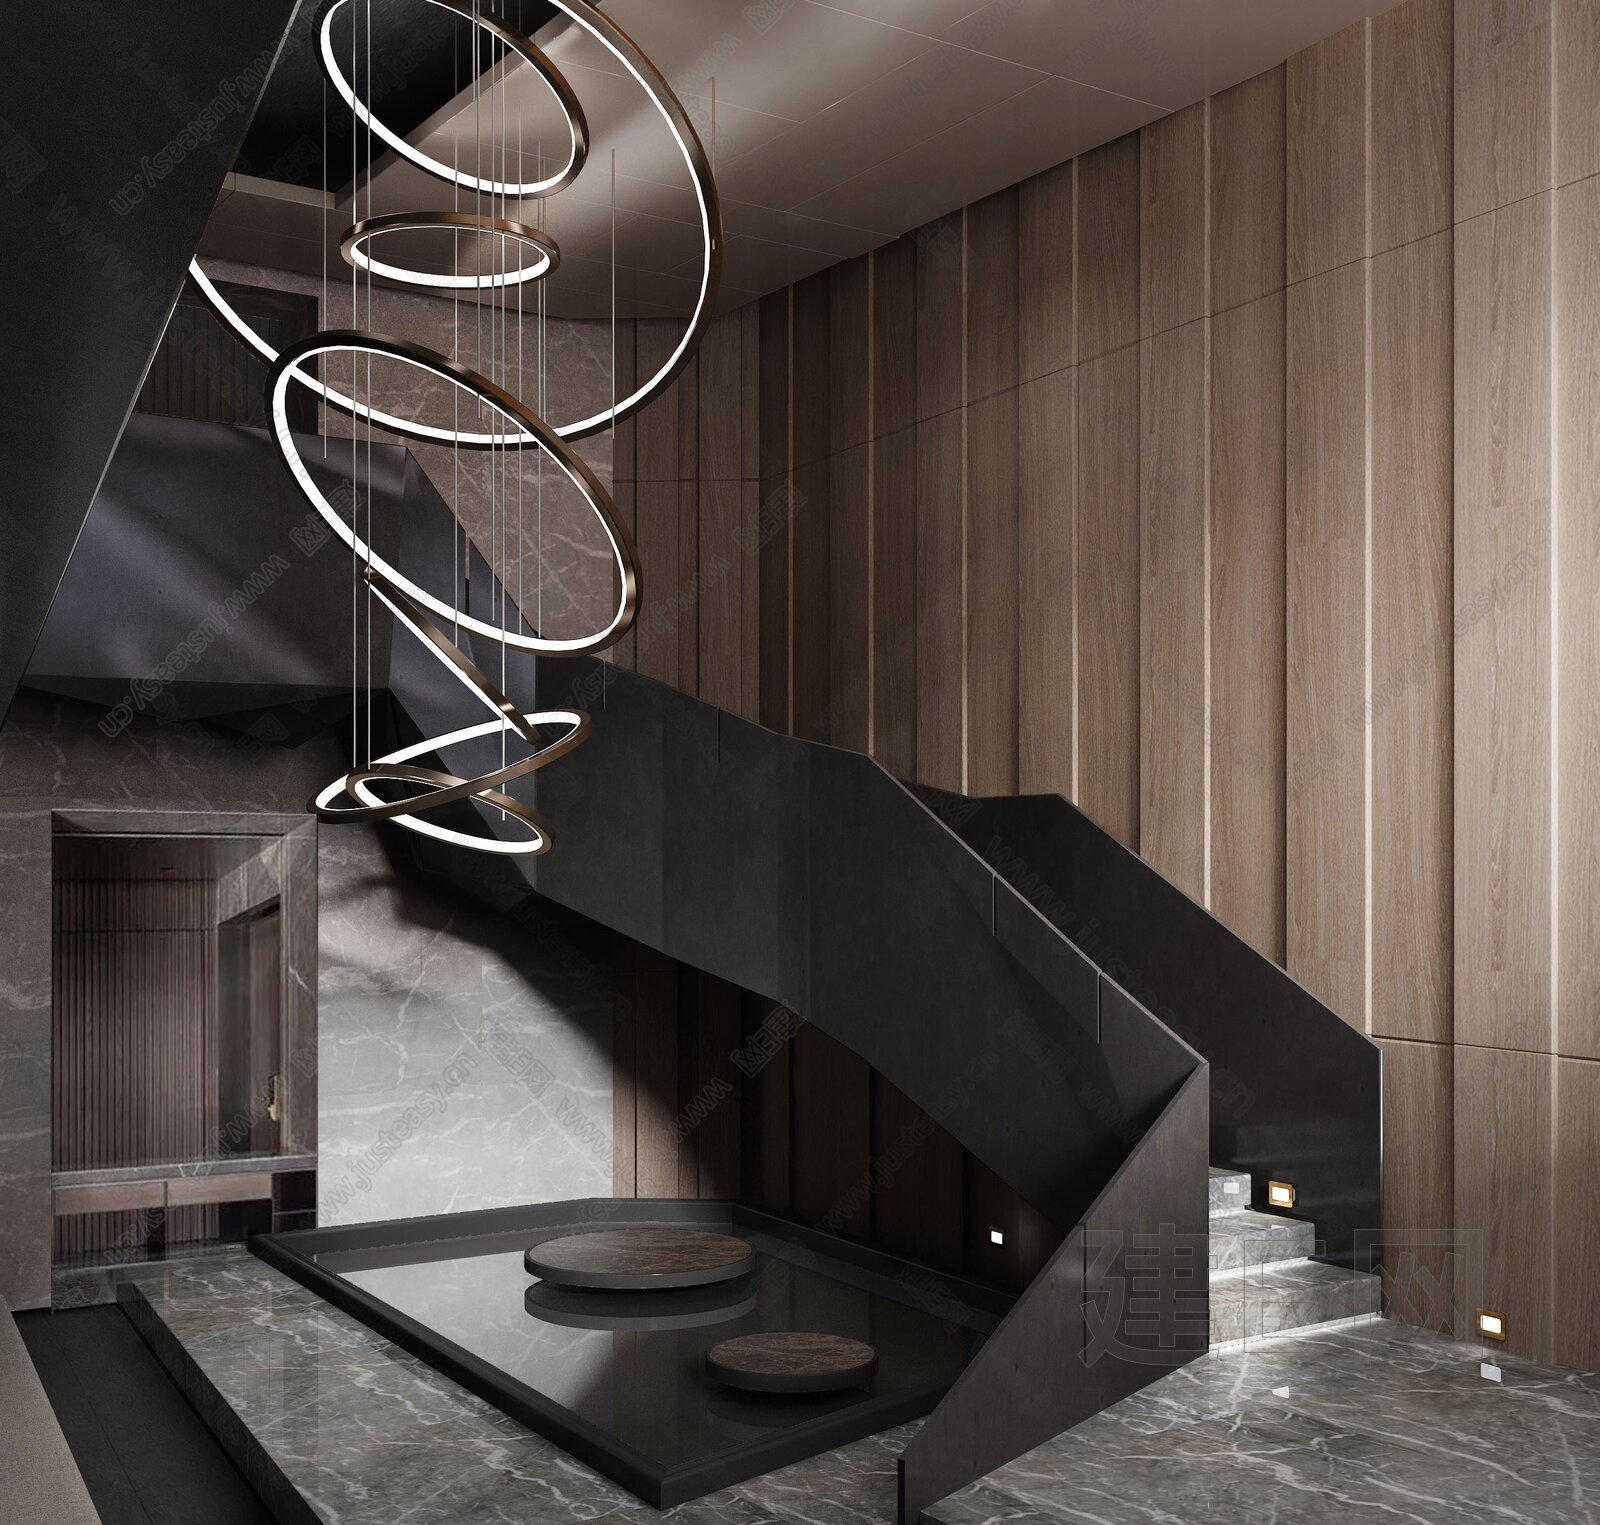 2017美式风格豪华家装楼梯间过道吊顶吊灯装修效果图欣赏 – 设计本装修效果图